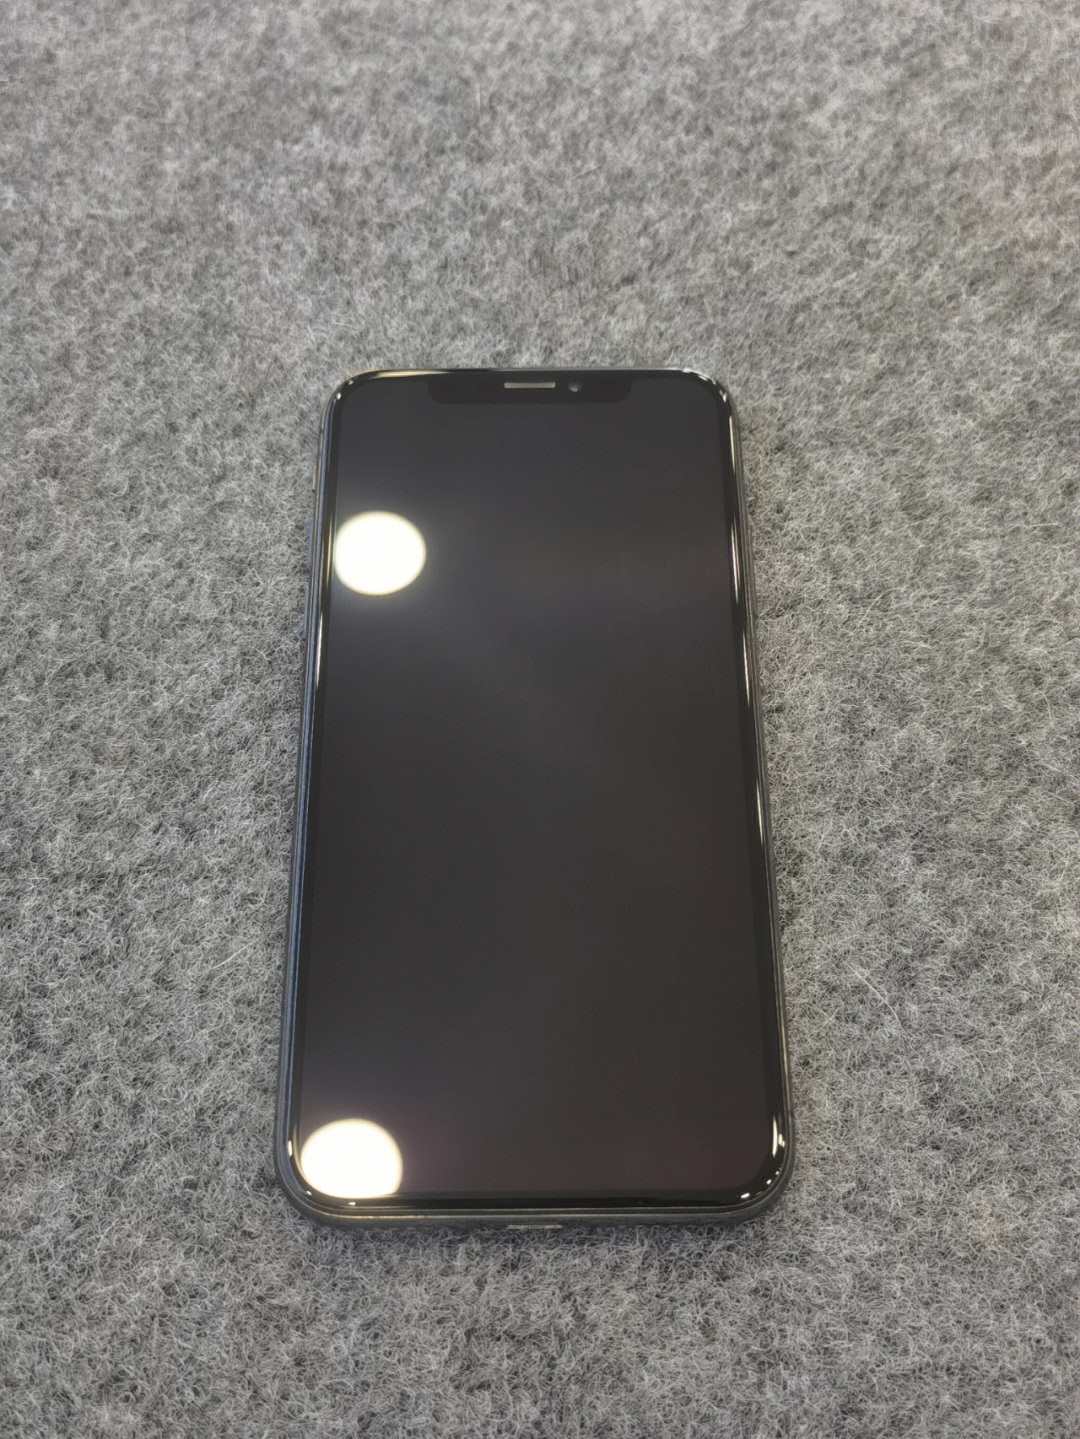 iphone x 64g 深空灰 国行新旧程度:全原无拆修,屏幕无划痕,后玻璃坏